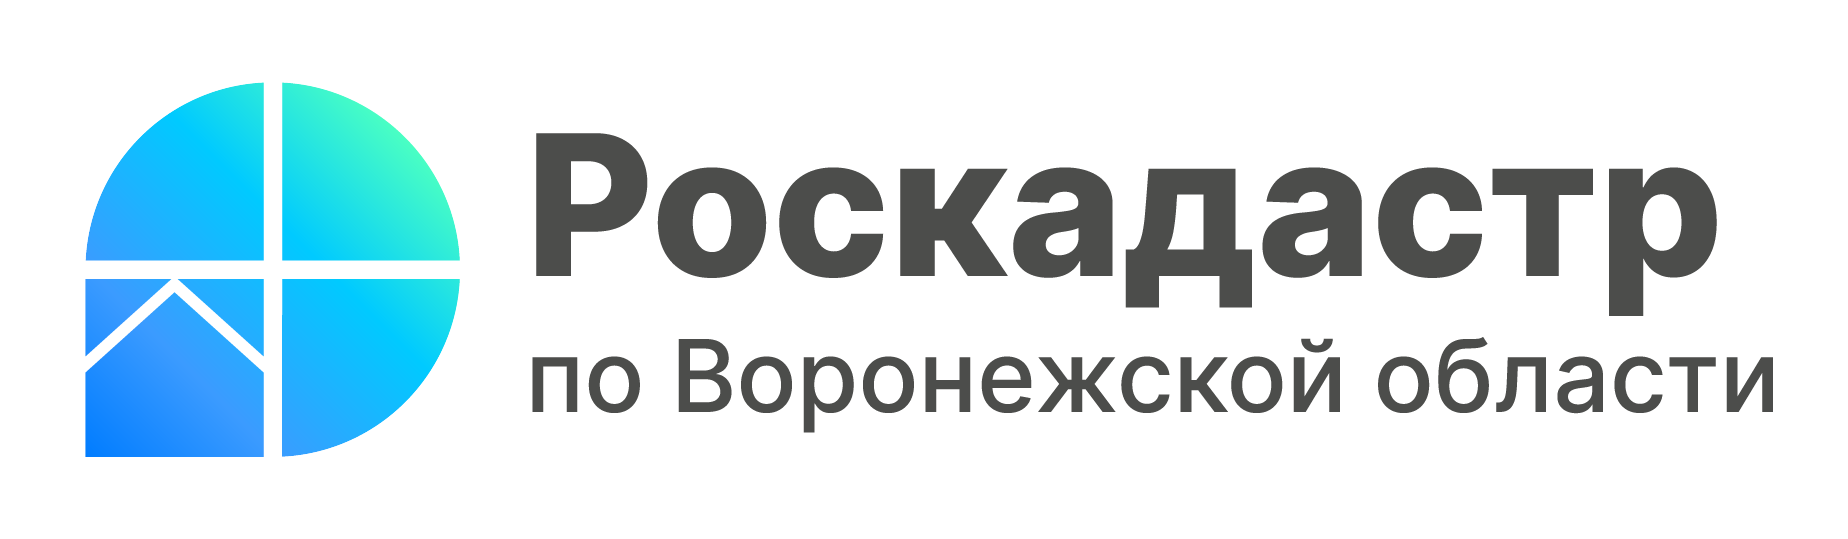 Логотип 2 Воронежская область (1).png